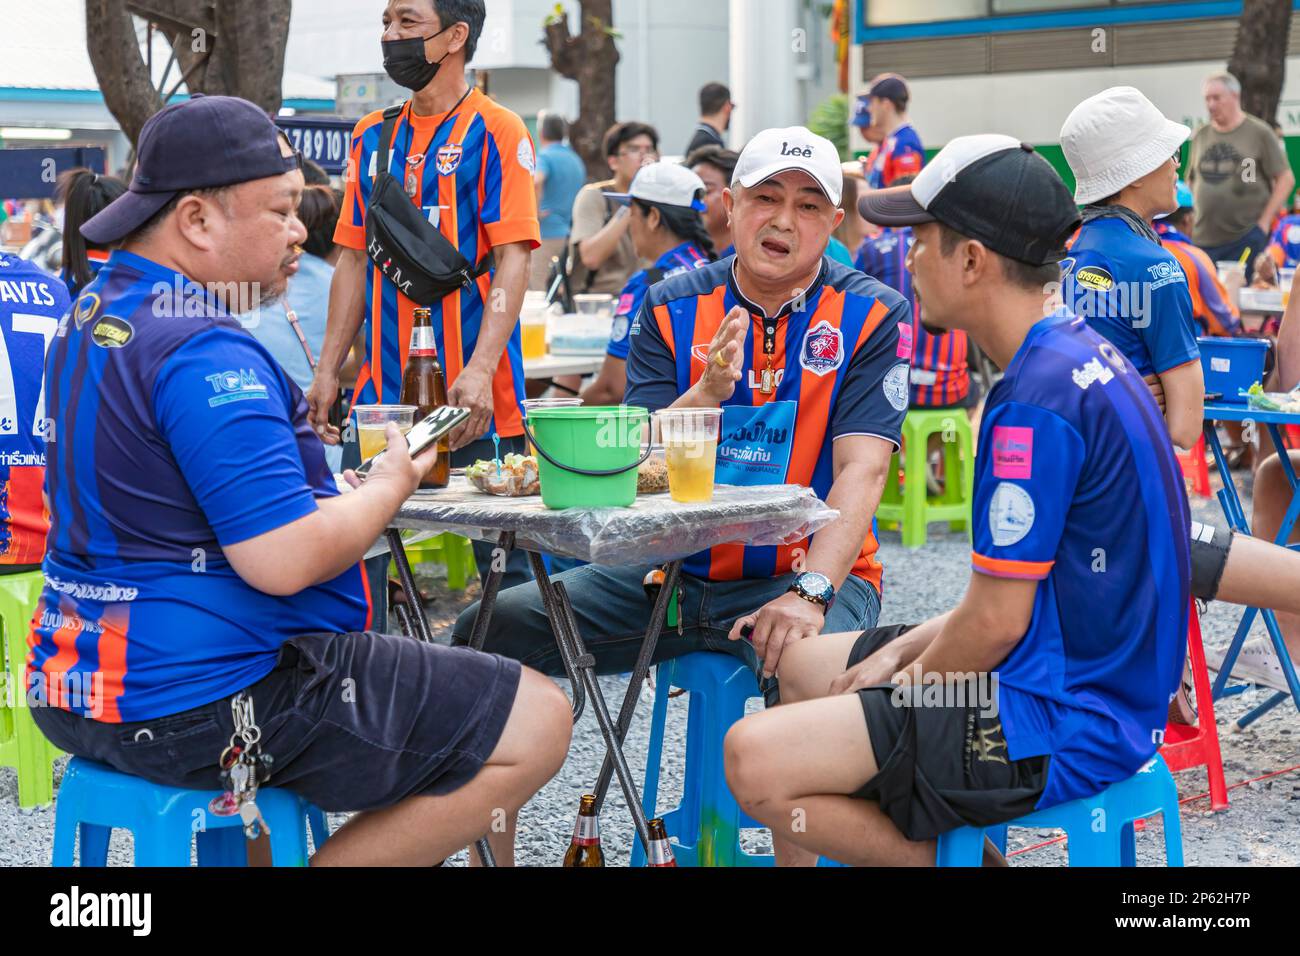 Aficionados al fútbol tailandés comiendo y bebiendo antes del partido en casa, Klong Toei, Bangkok, Tailandia Foto de stock